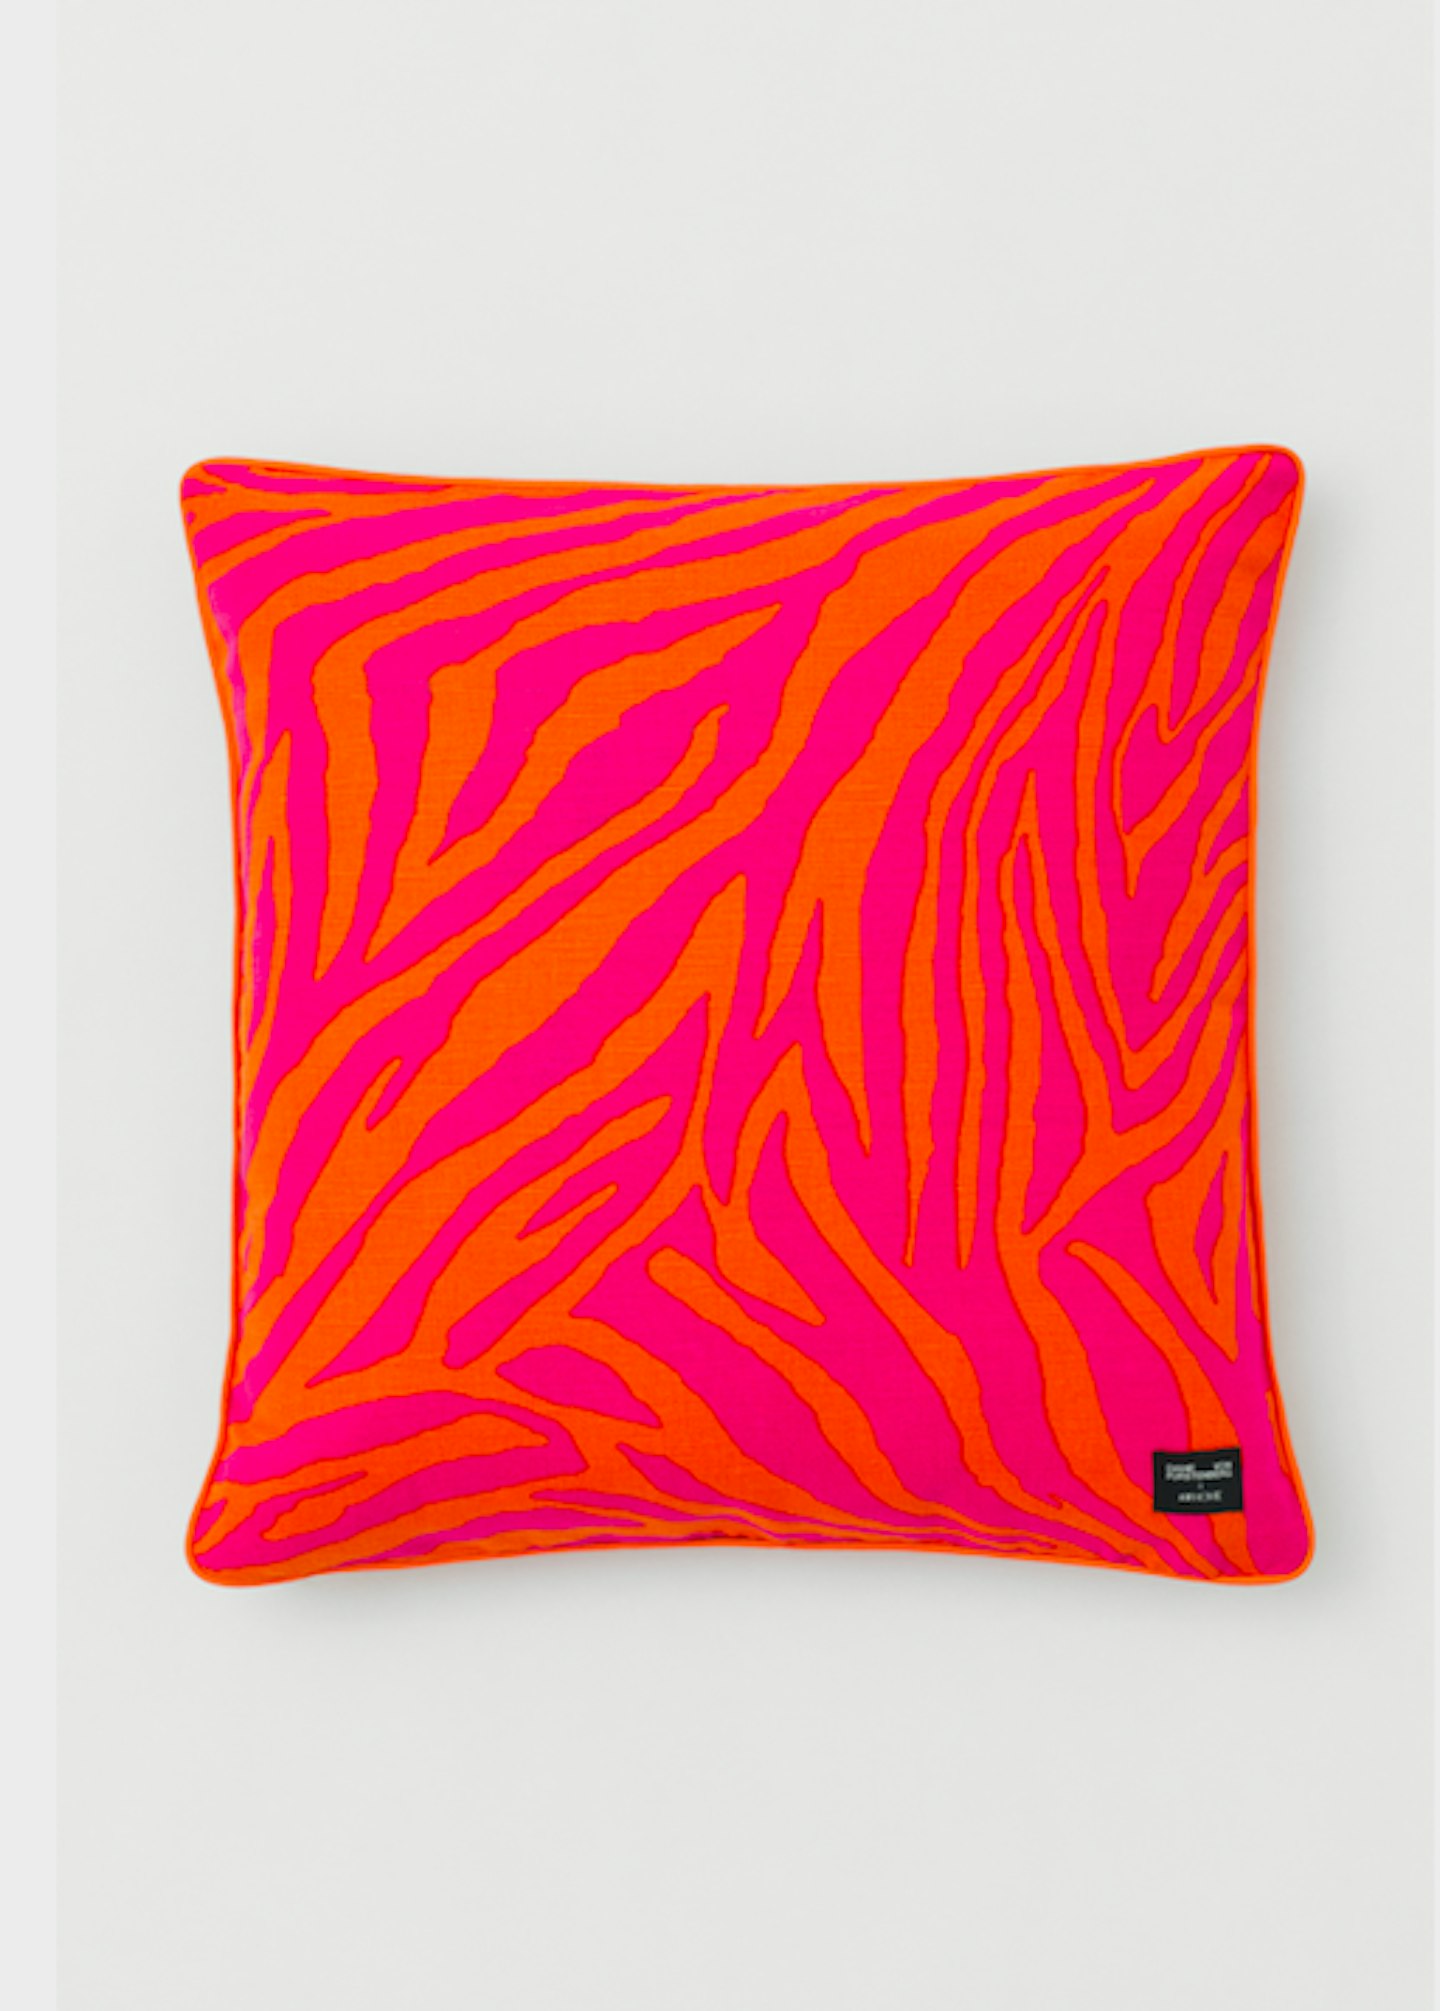 Colourful Printed Cushion, £34.99